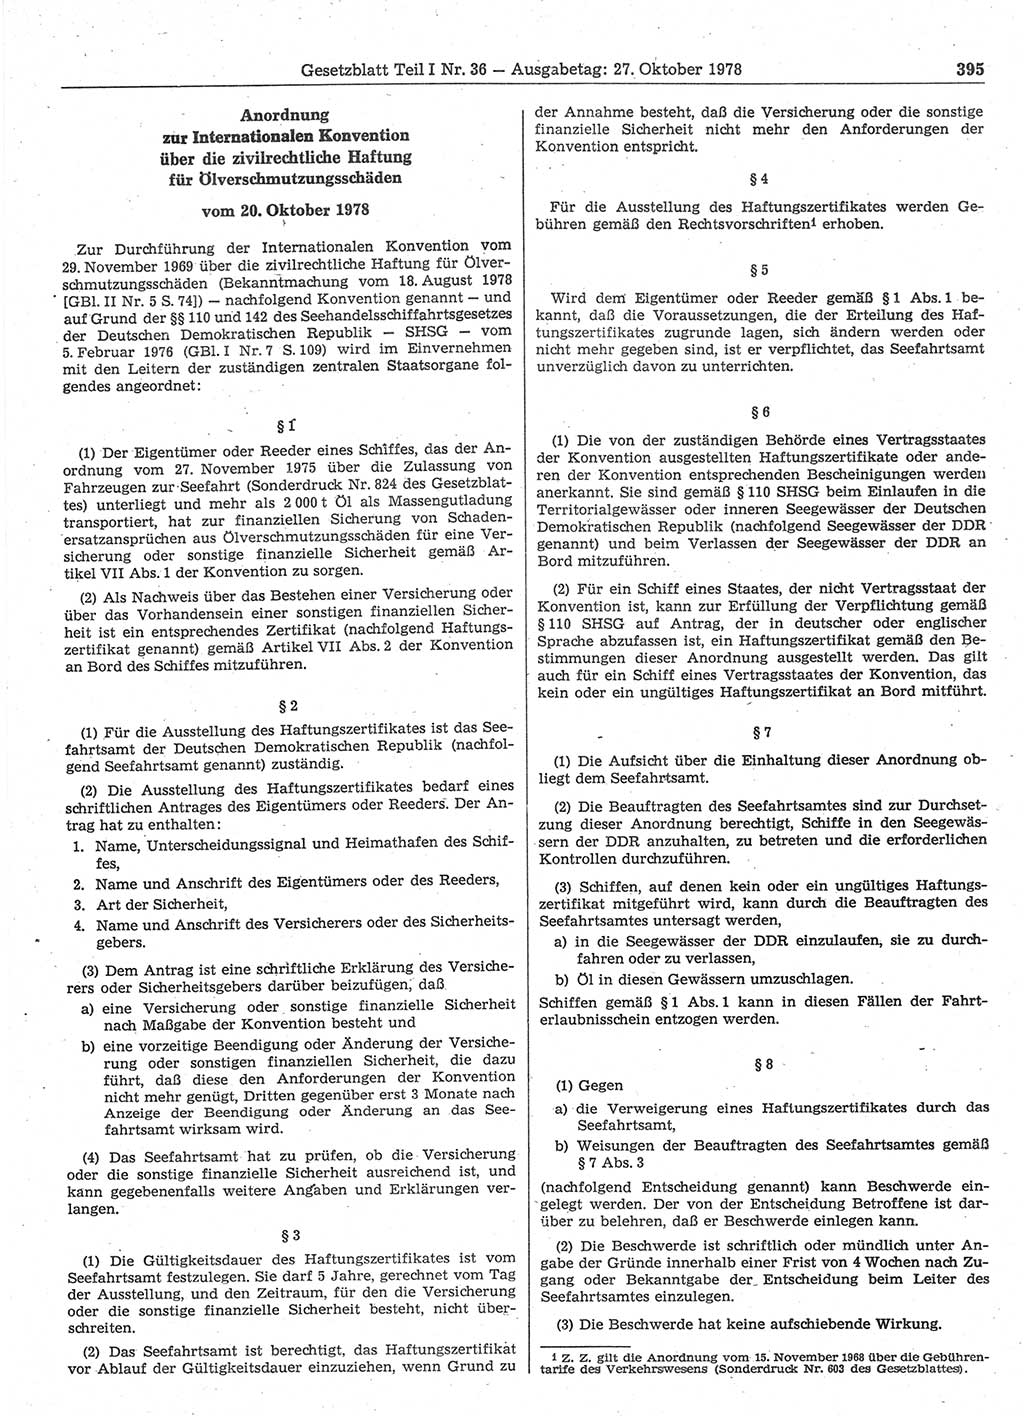 Gesetzblatt (GBl.) der Deutschen Demokratischen Republik (DDR) Teil Ⅰ 1978, Seite 395 (GBl. DDR Ⅰ 1978, S. 395)